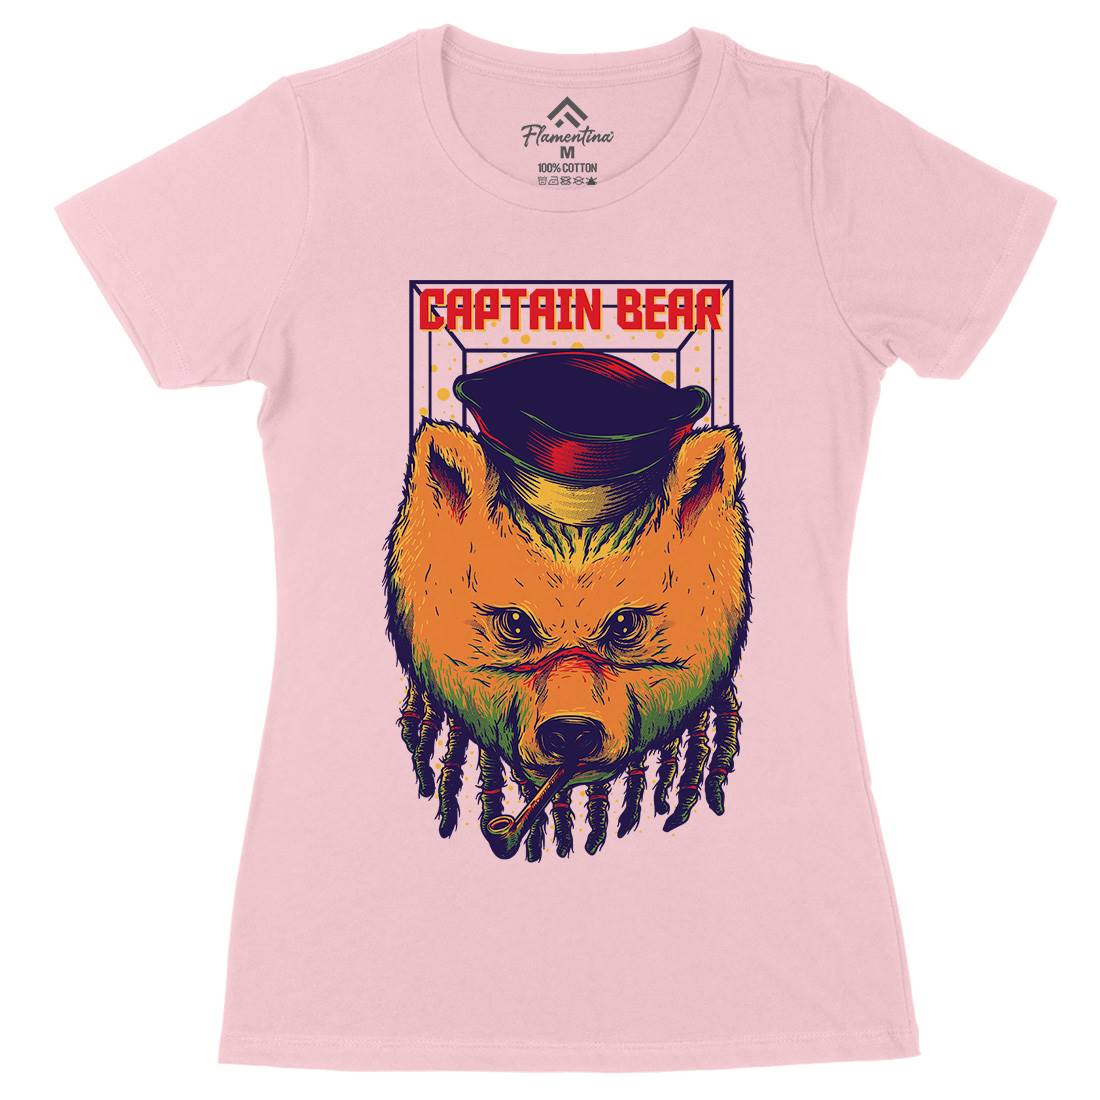 Captain Bear Womens Organic Crew Neck T-Shirt Animals D721